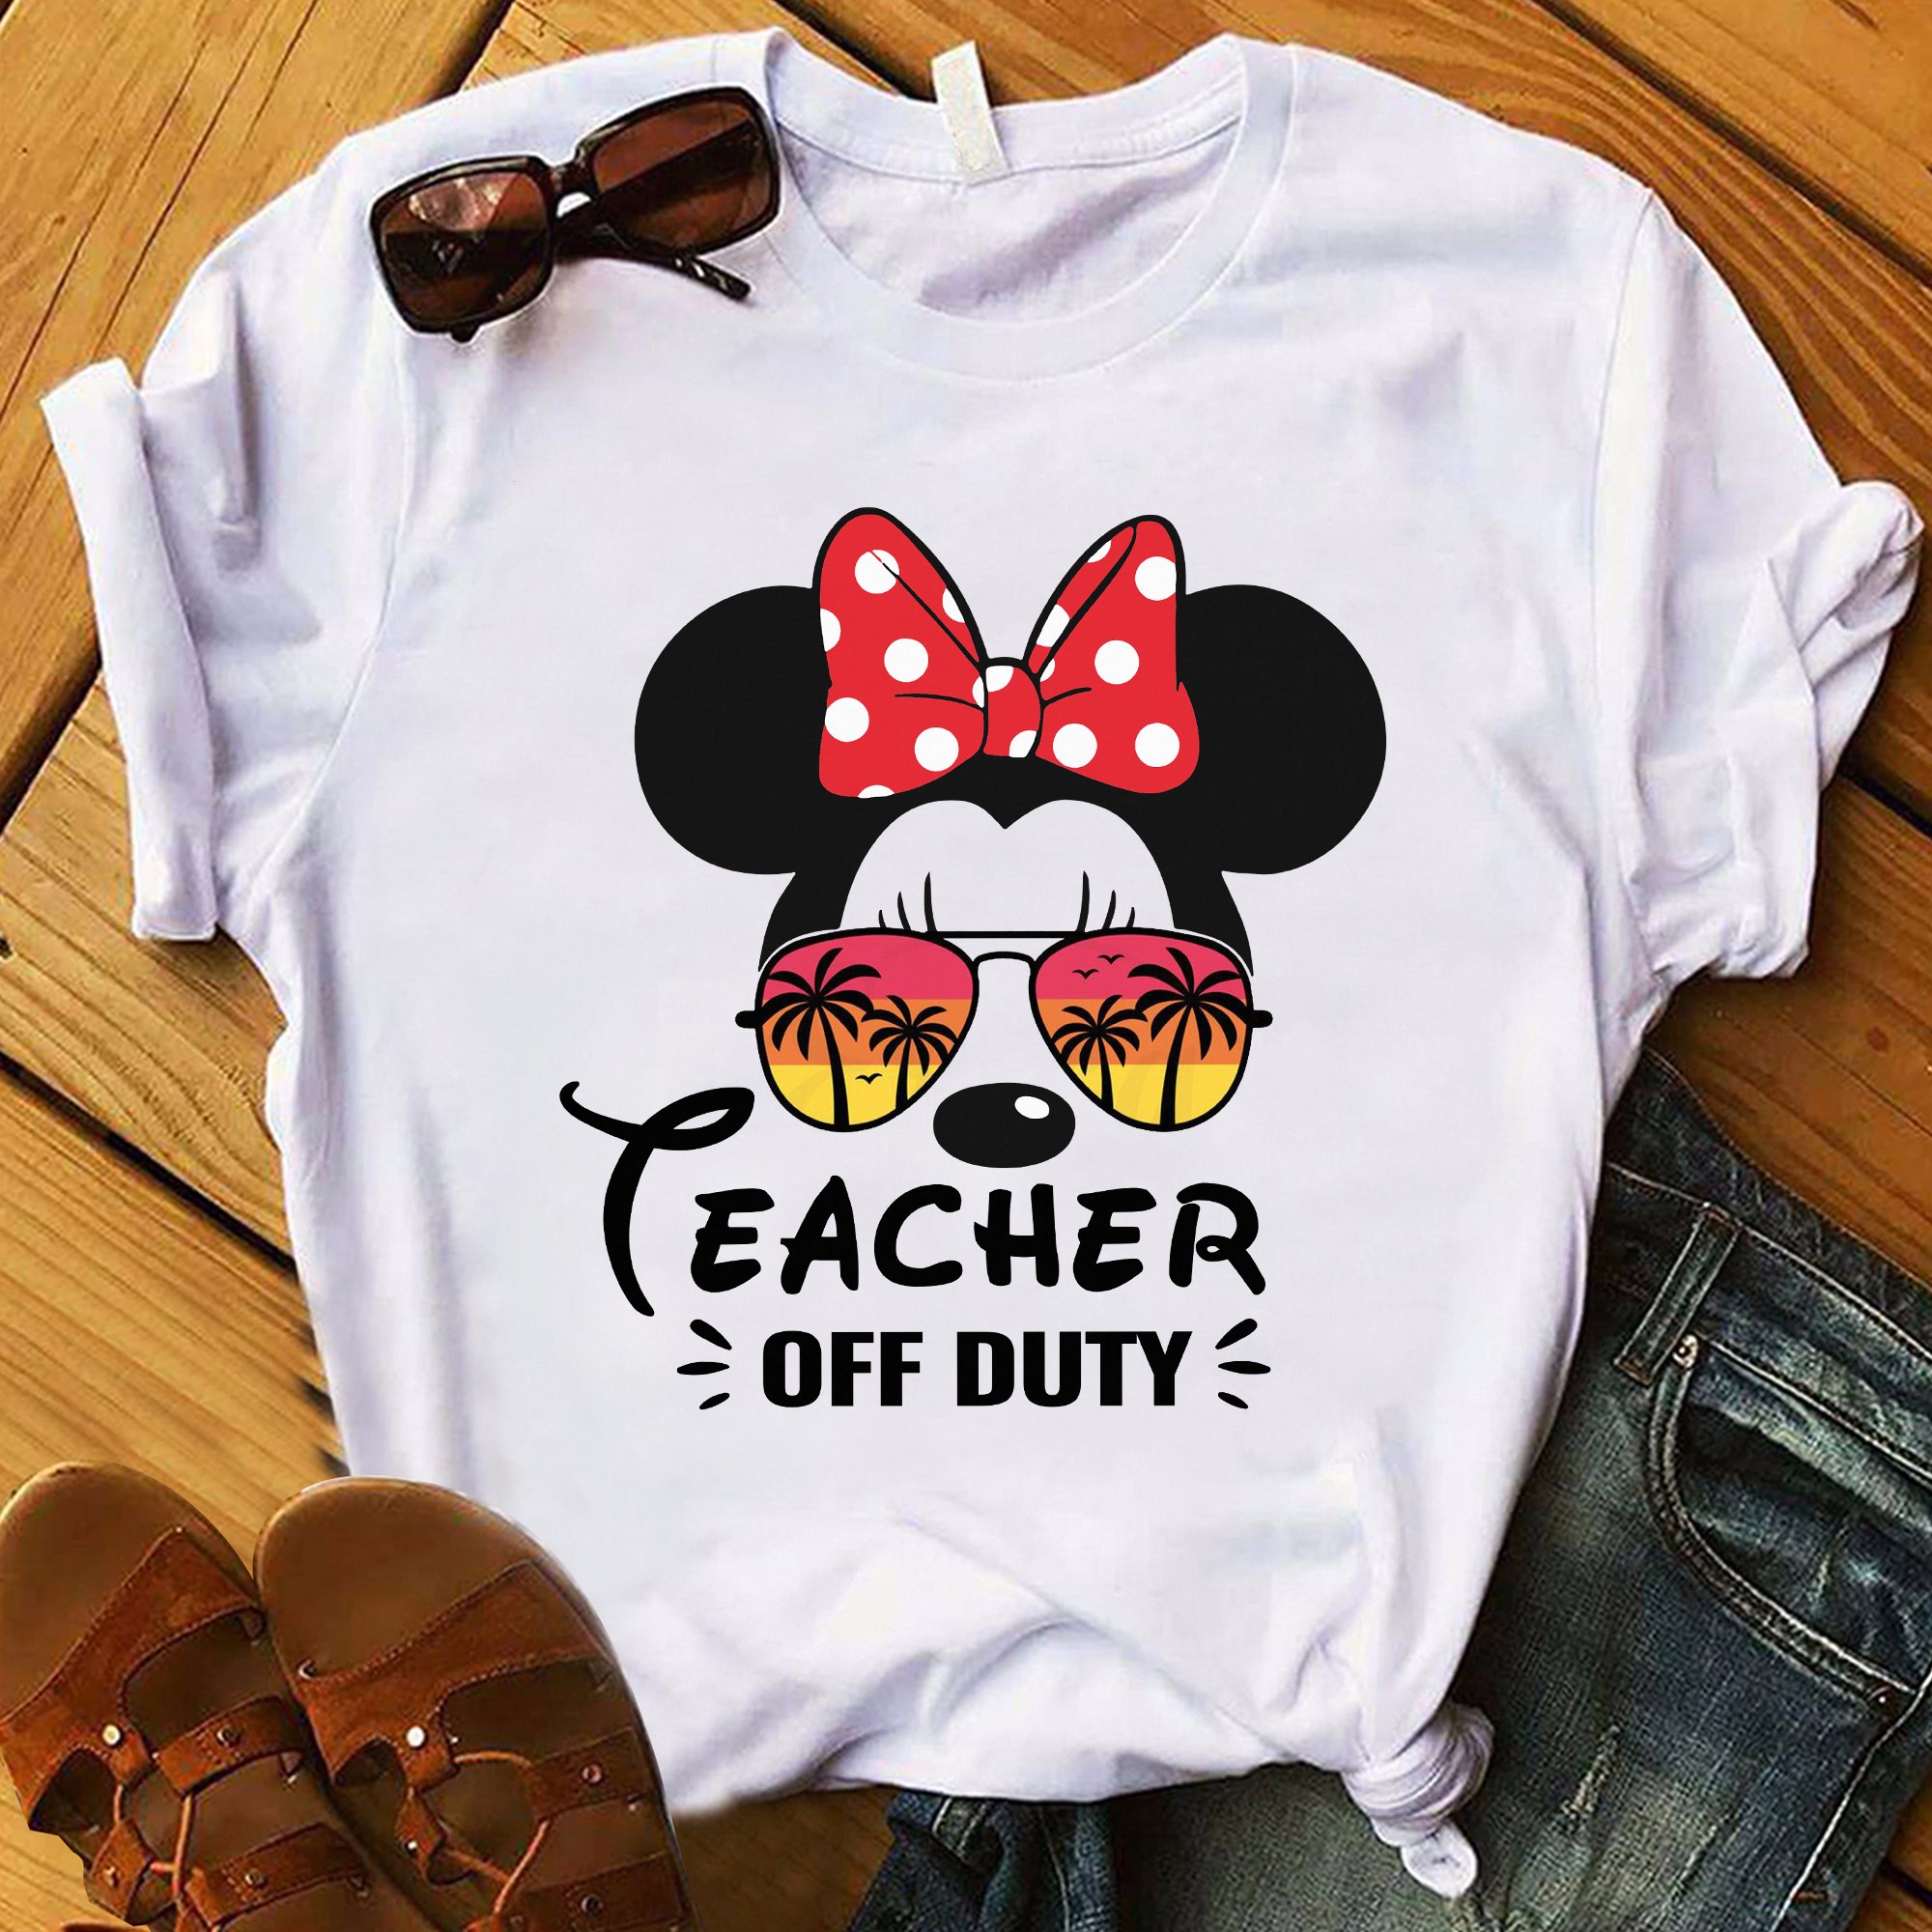 Teacher off duty - Minnie mouse, teacher the job